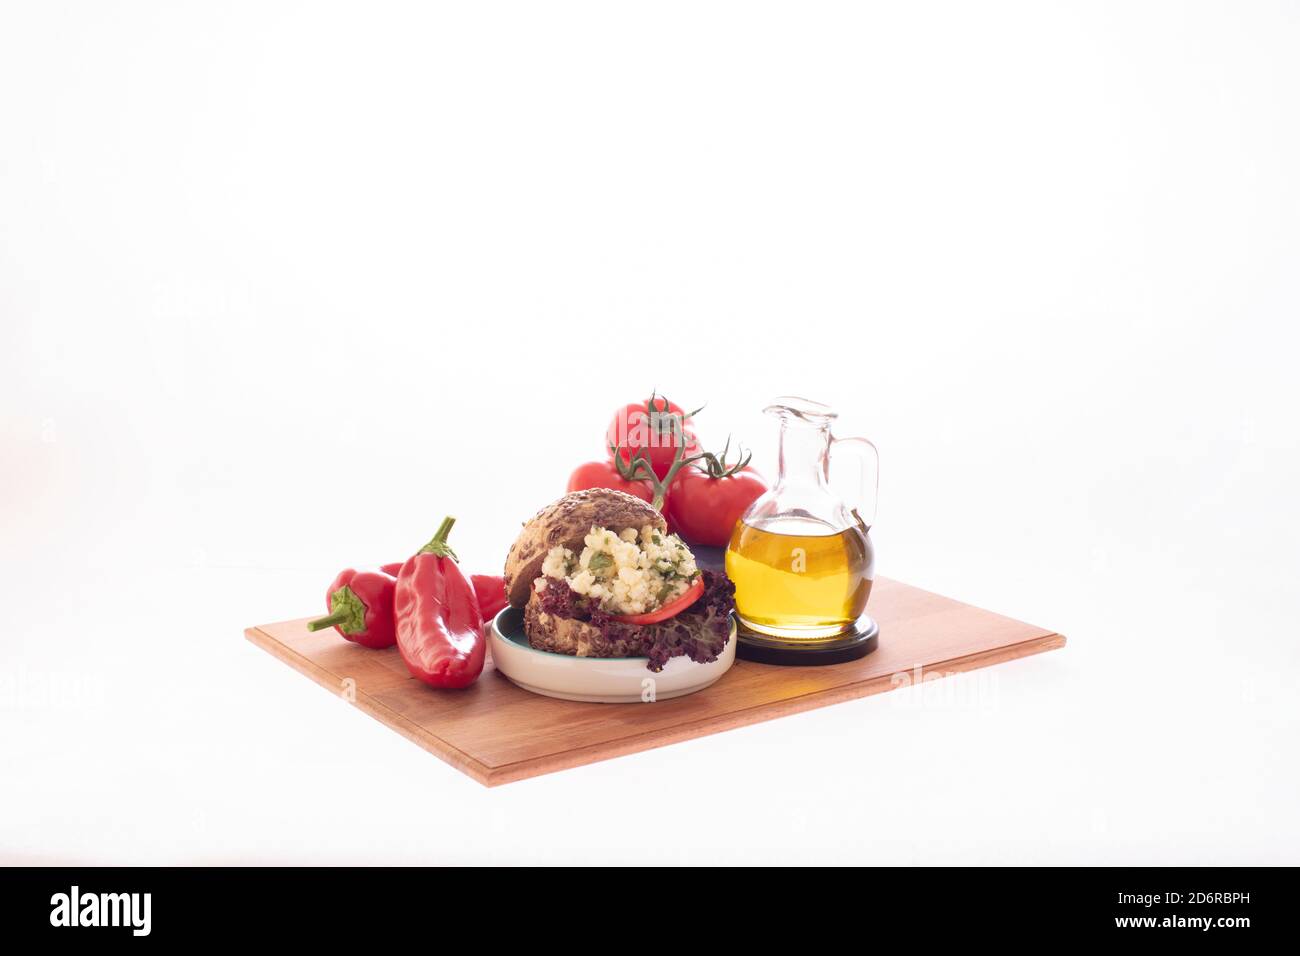 Sandwich au fromage blanc et au tomatoe avec une bouteille d'huile d'olive, du poivre de capia rouge et un bouquet de tomates servi sur une assiette en bois Banque D'Images